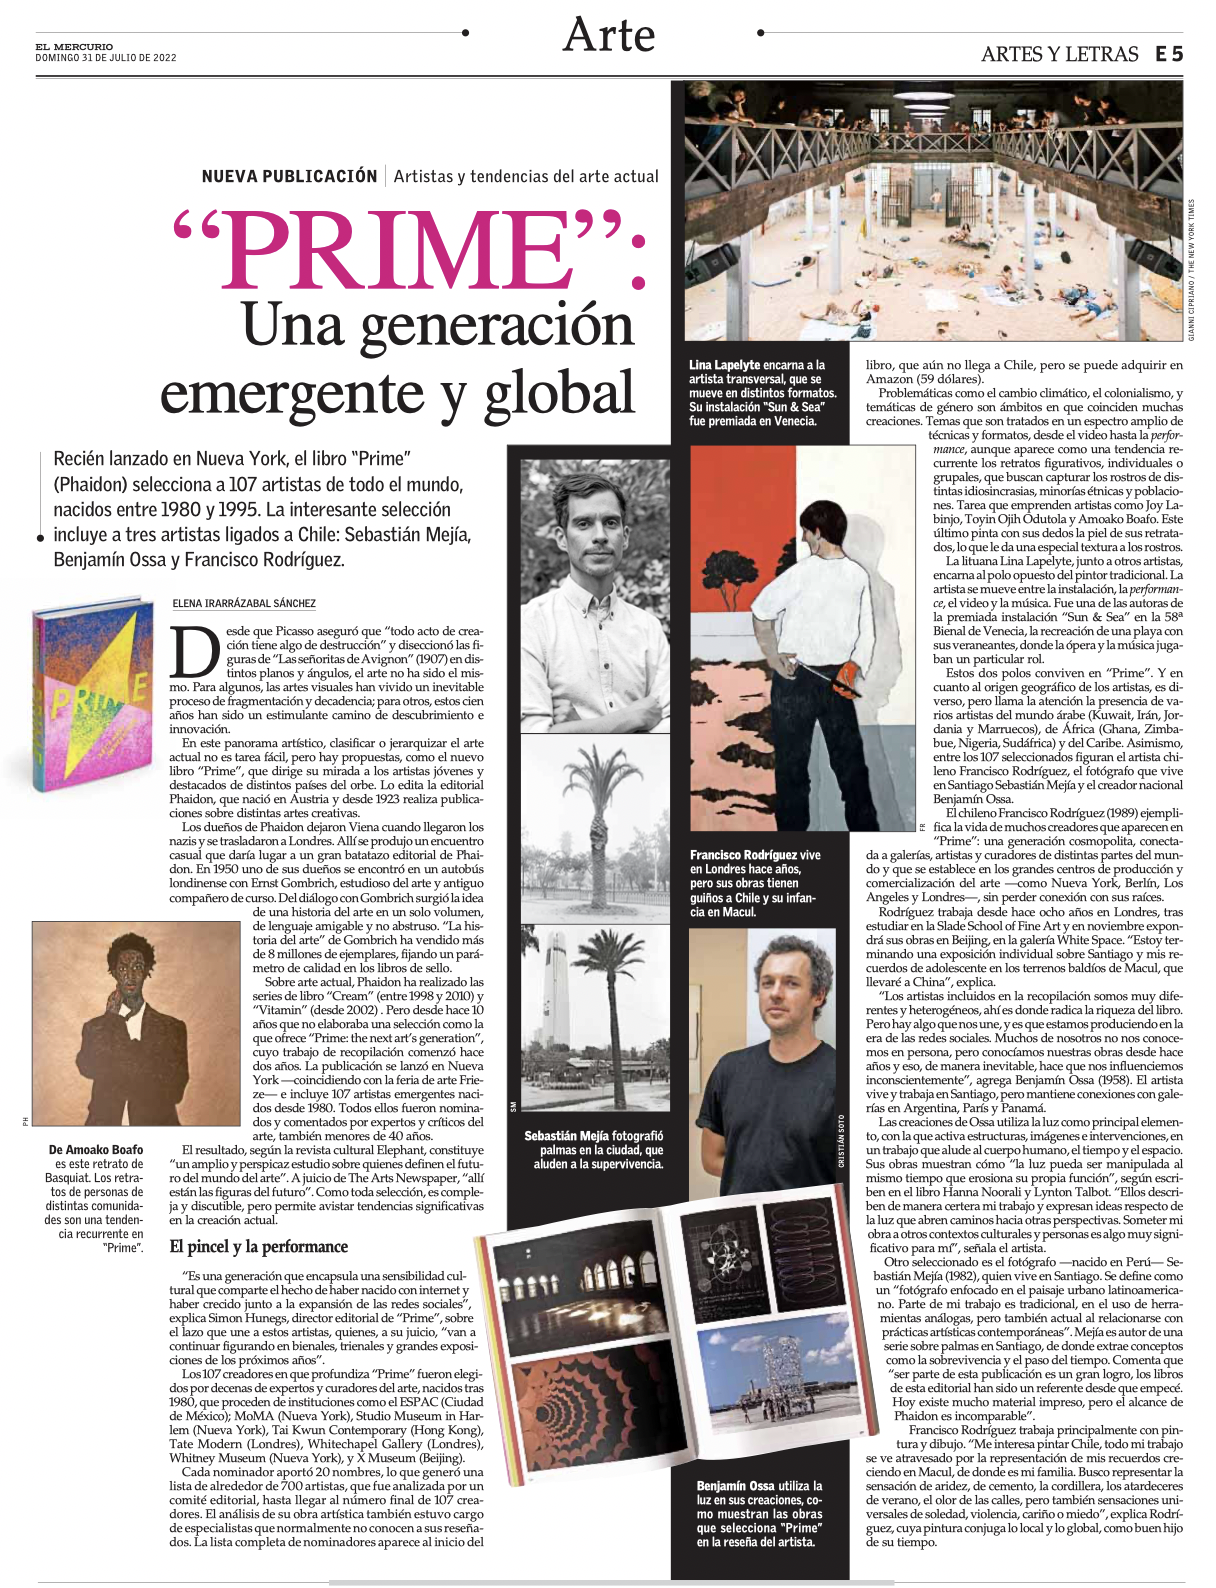 PRIME / Una generación emergente y global